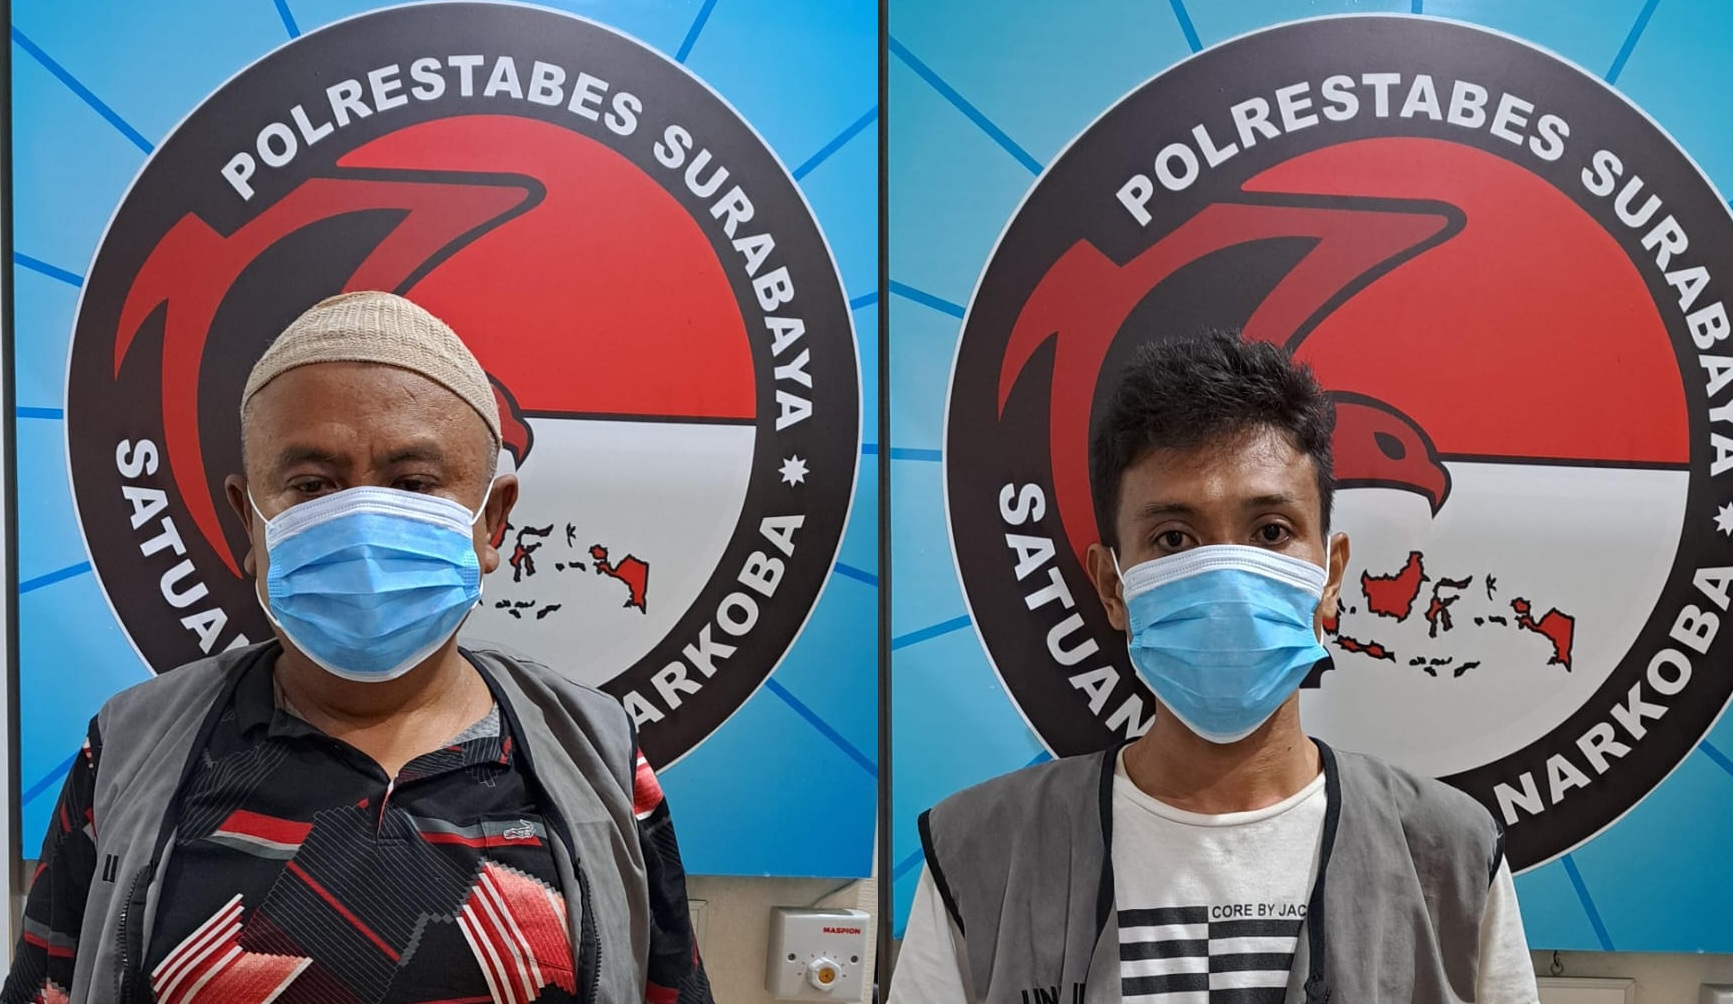 Satreskoba Polrestabes Surabaya Bekuk 2 Budak Sabu